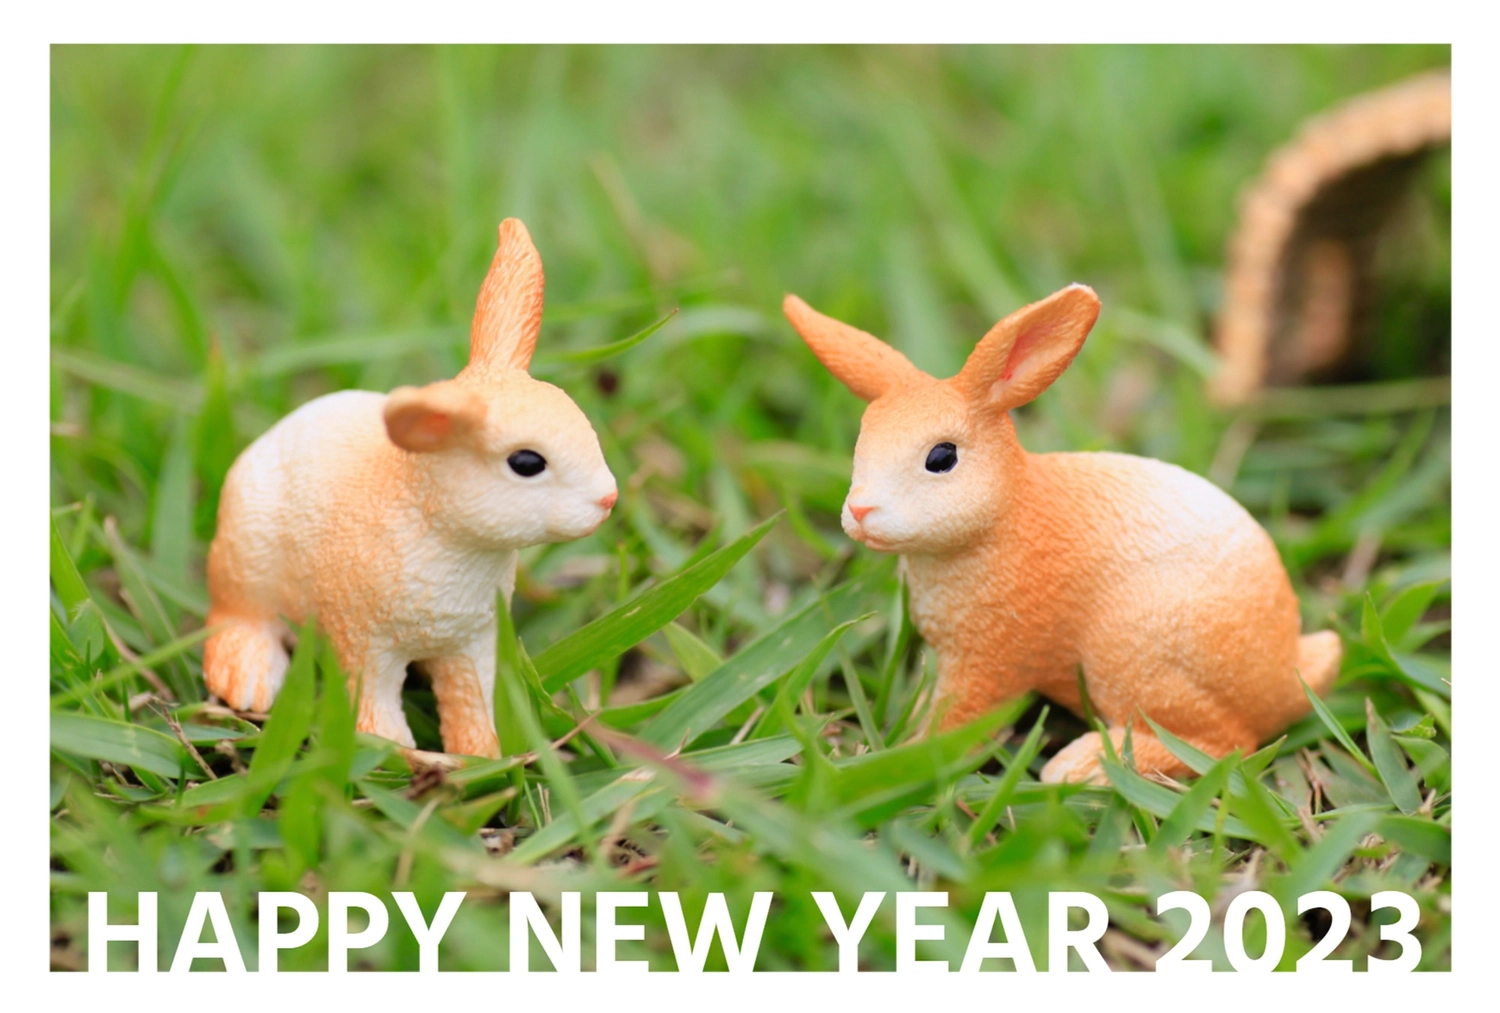 シュライヒ　葉っぱの上にいる2匹のうさぎ　HAPPY NEW YEAR, New Year's card, Outdoor, Schleich figure, New Year Card template